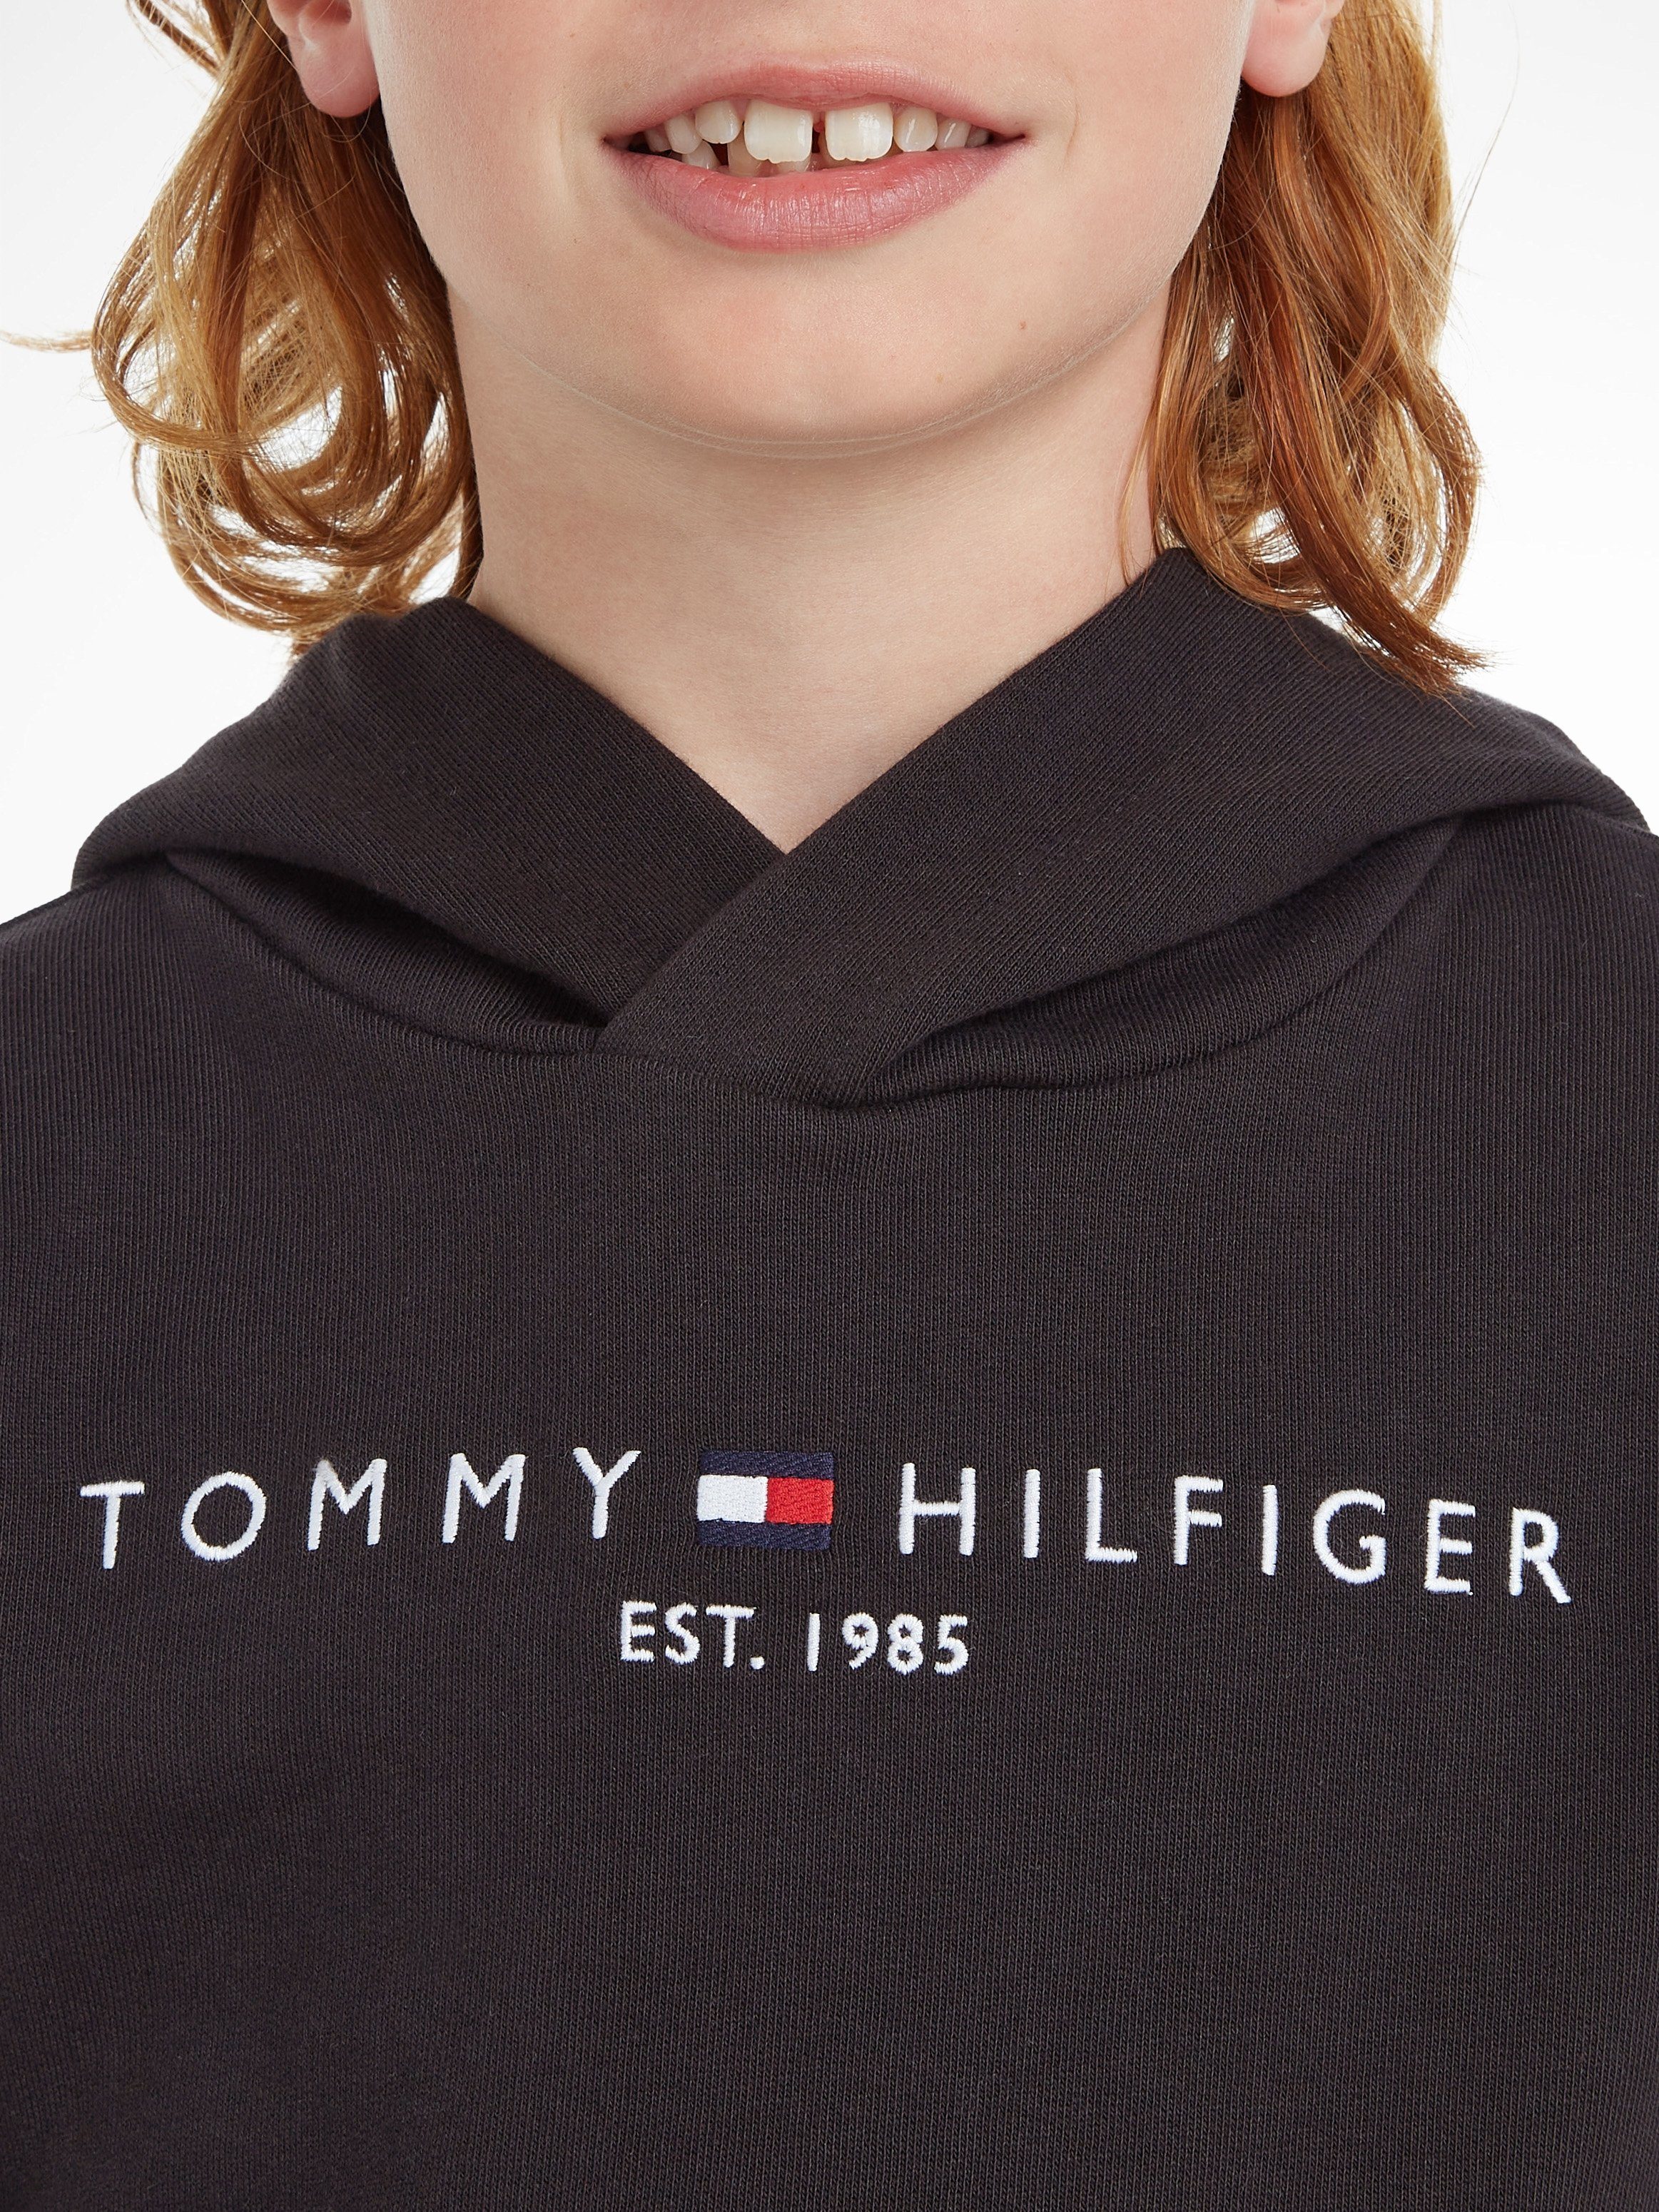 Kinder Jungen ESSENTIAL Junior und Kids Kapuzensweatshirt Hilfiger Mädchen HOODIE MiniMe,für Tommy